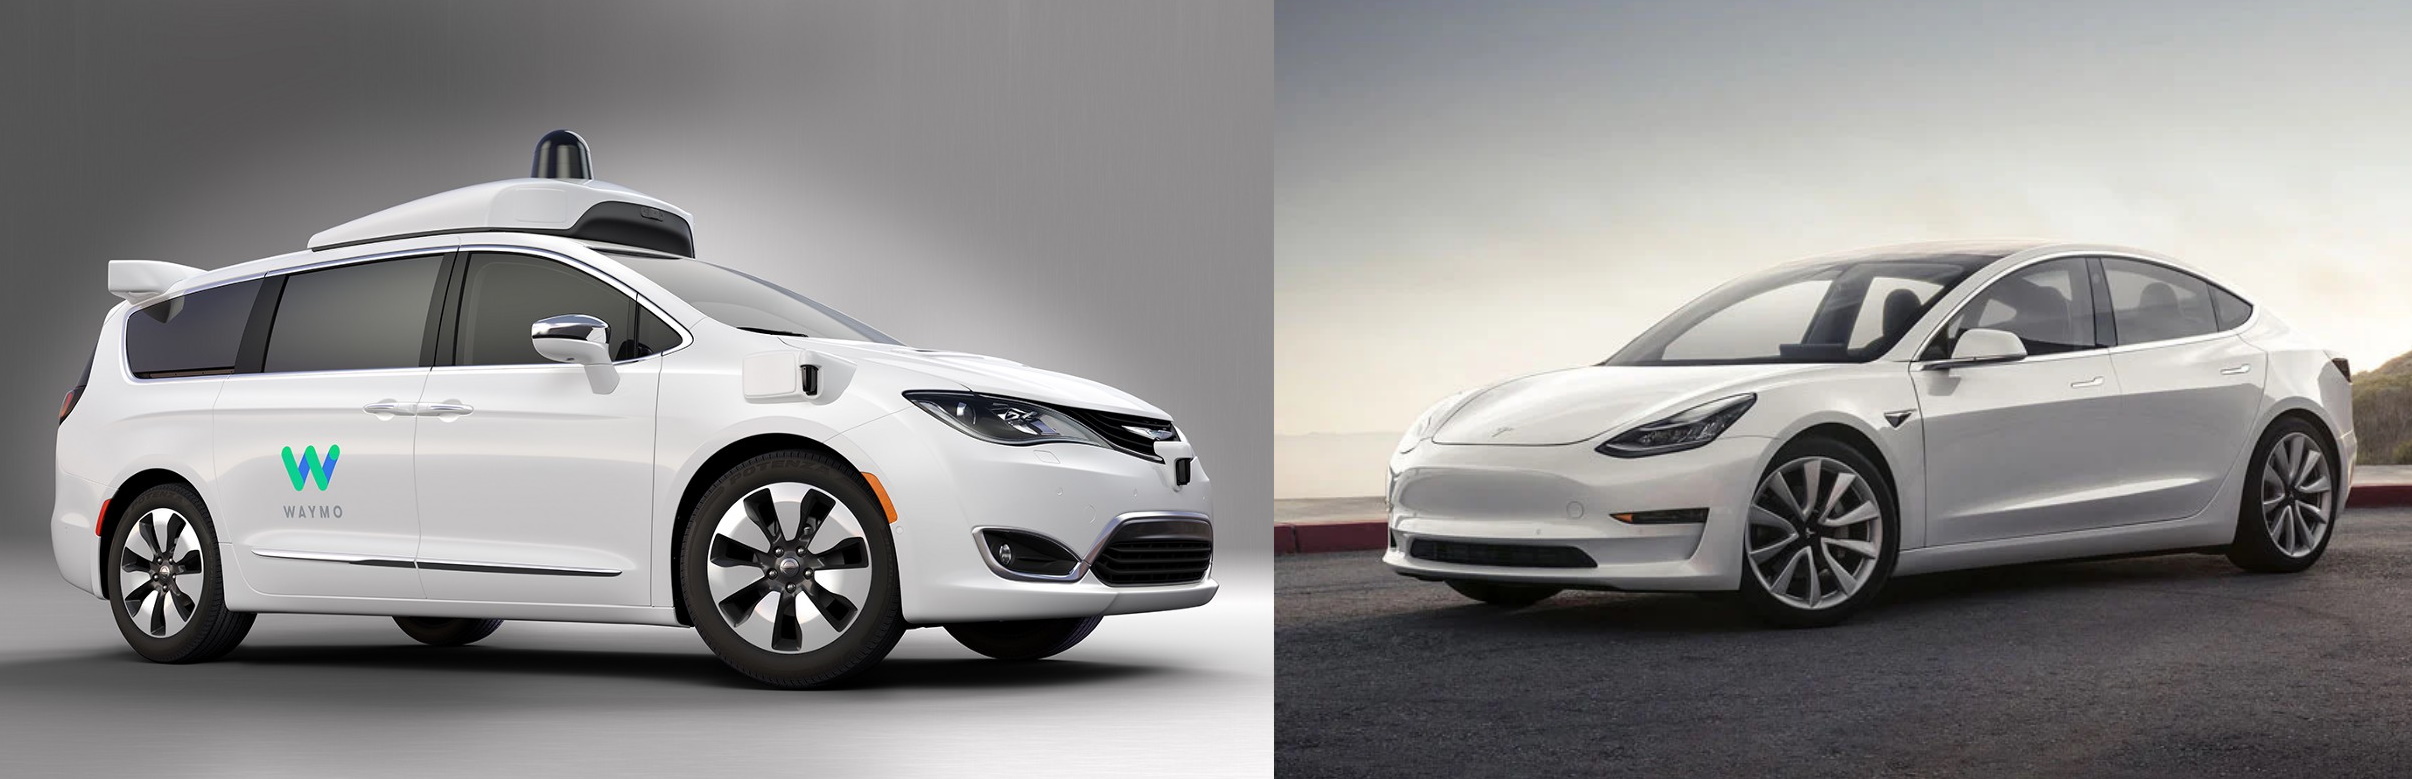 У кого самый крутой автомобильный автопилот? Waymo против Tesla на дорогах Аризоны